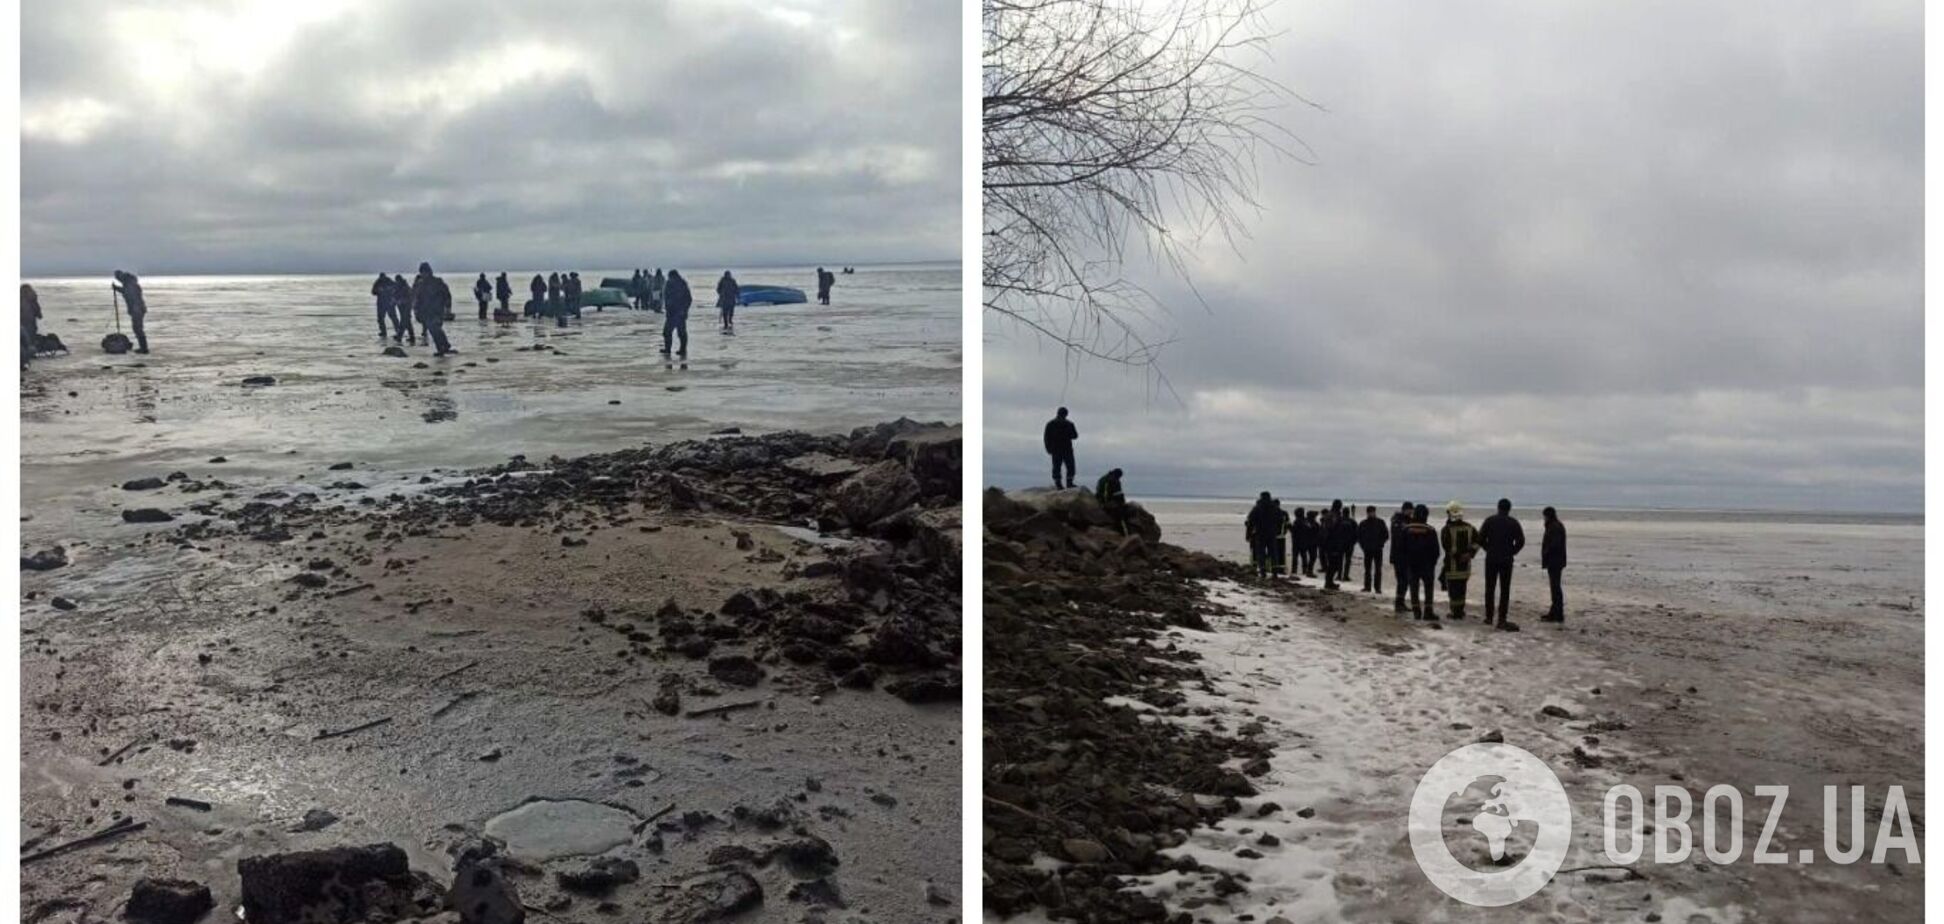 Под Черкассами на Днепре откололась льдина с 70 рыбаками: все подробности спасательной операции и фото